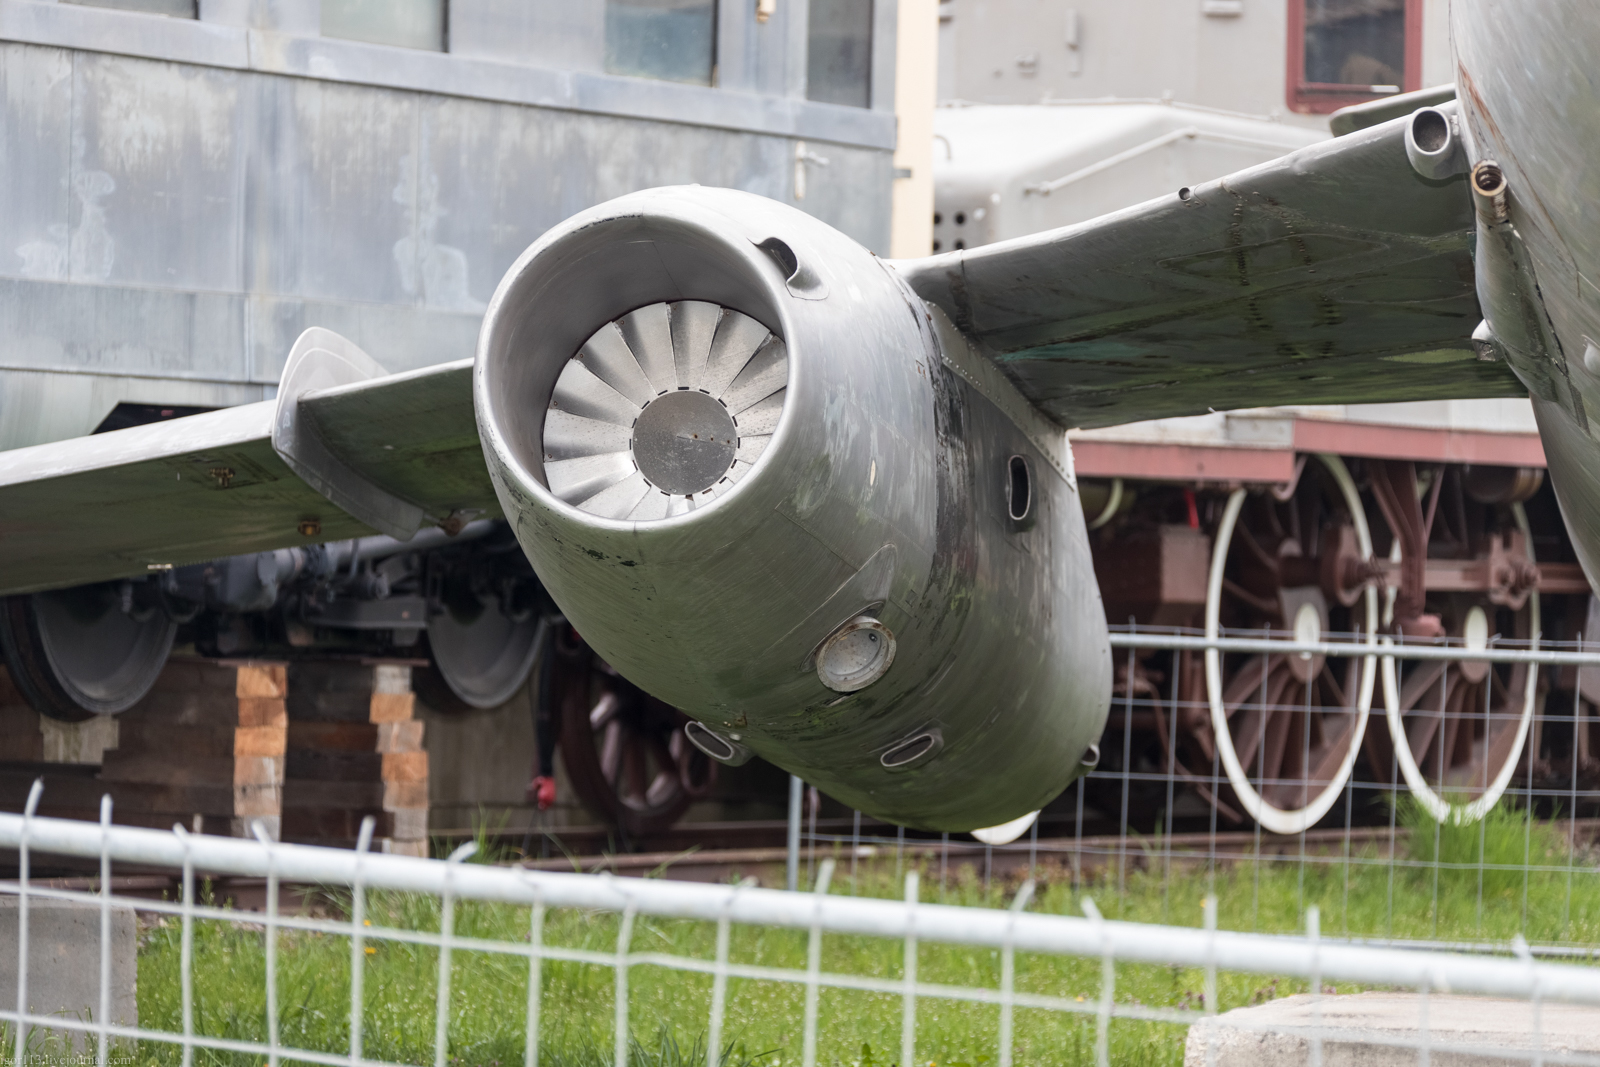 Технический музей в Шпеере: фронтовой разведчик Як-27Р. 